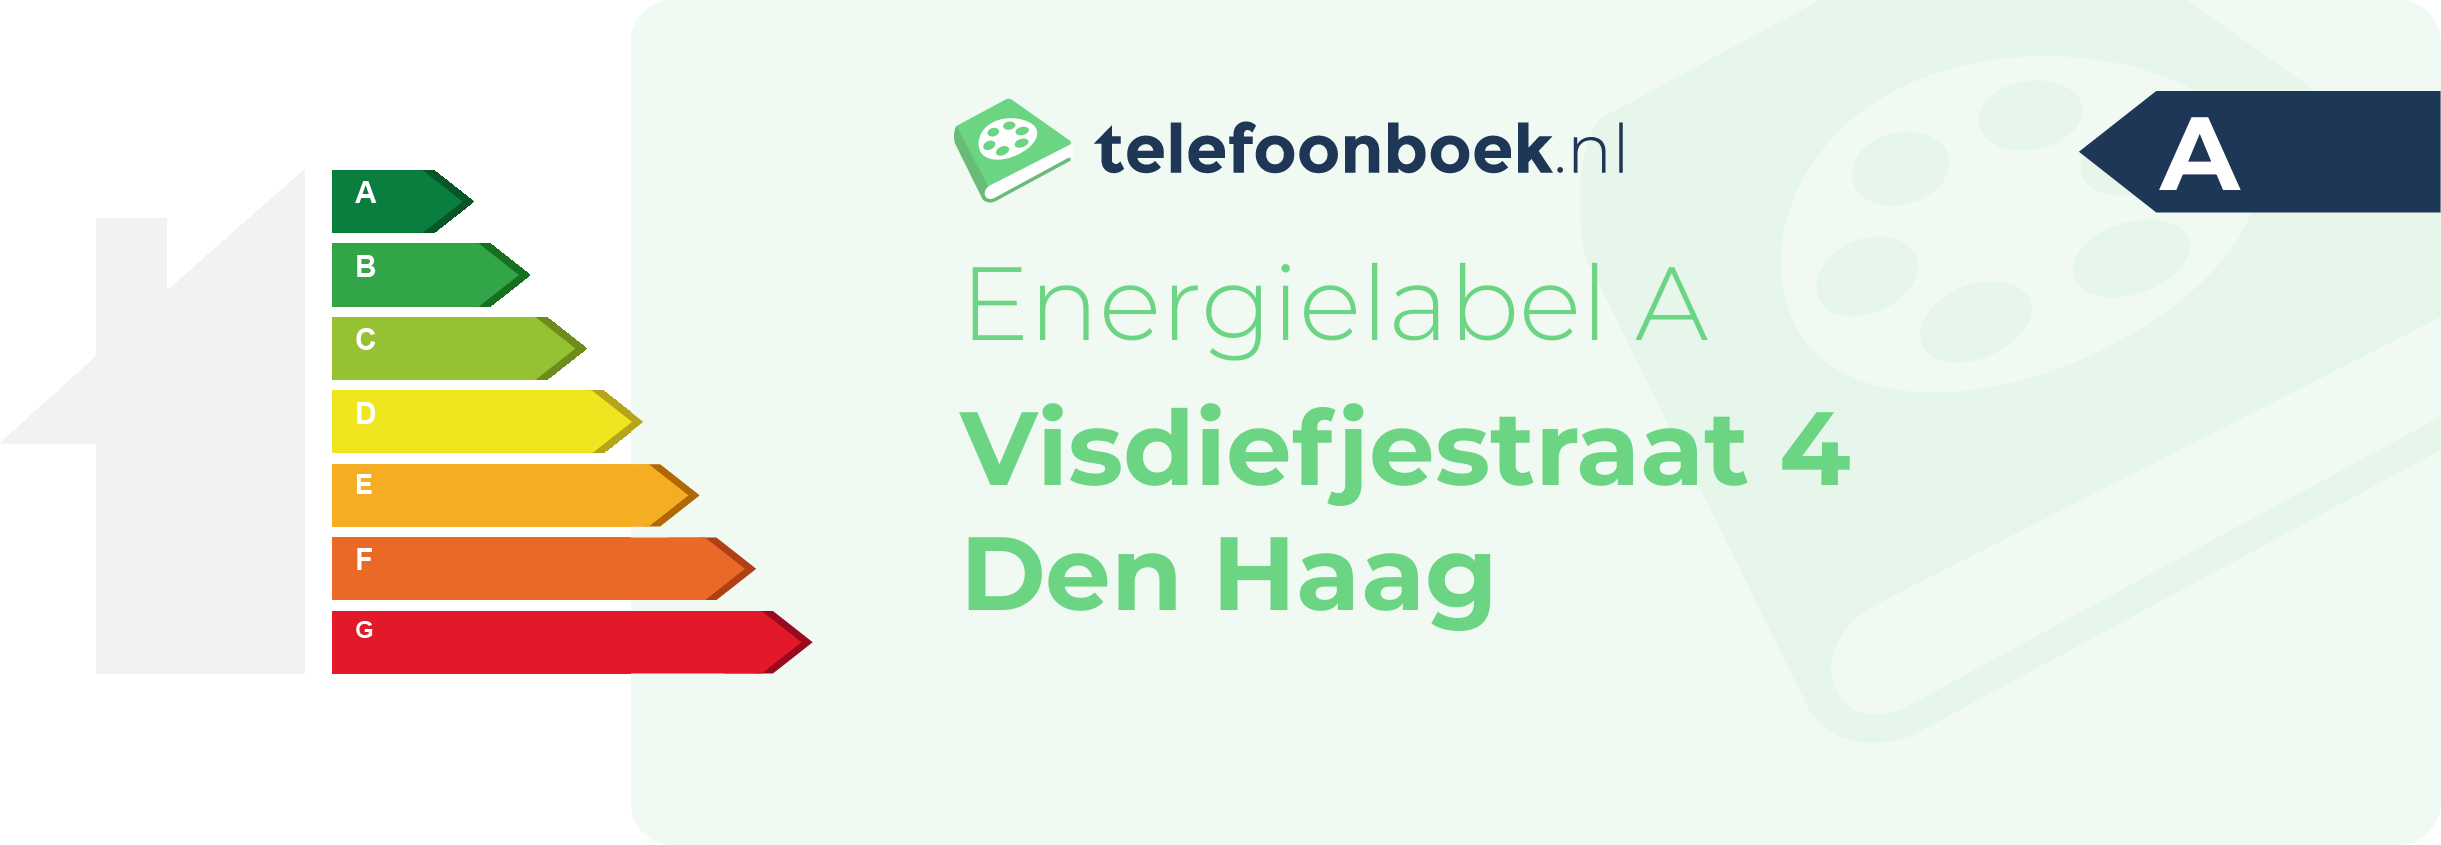 Energielabel Visdiefjestraat 4 Den Haag